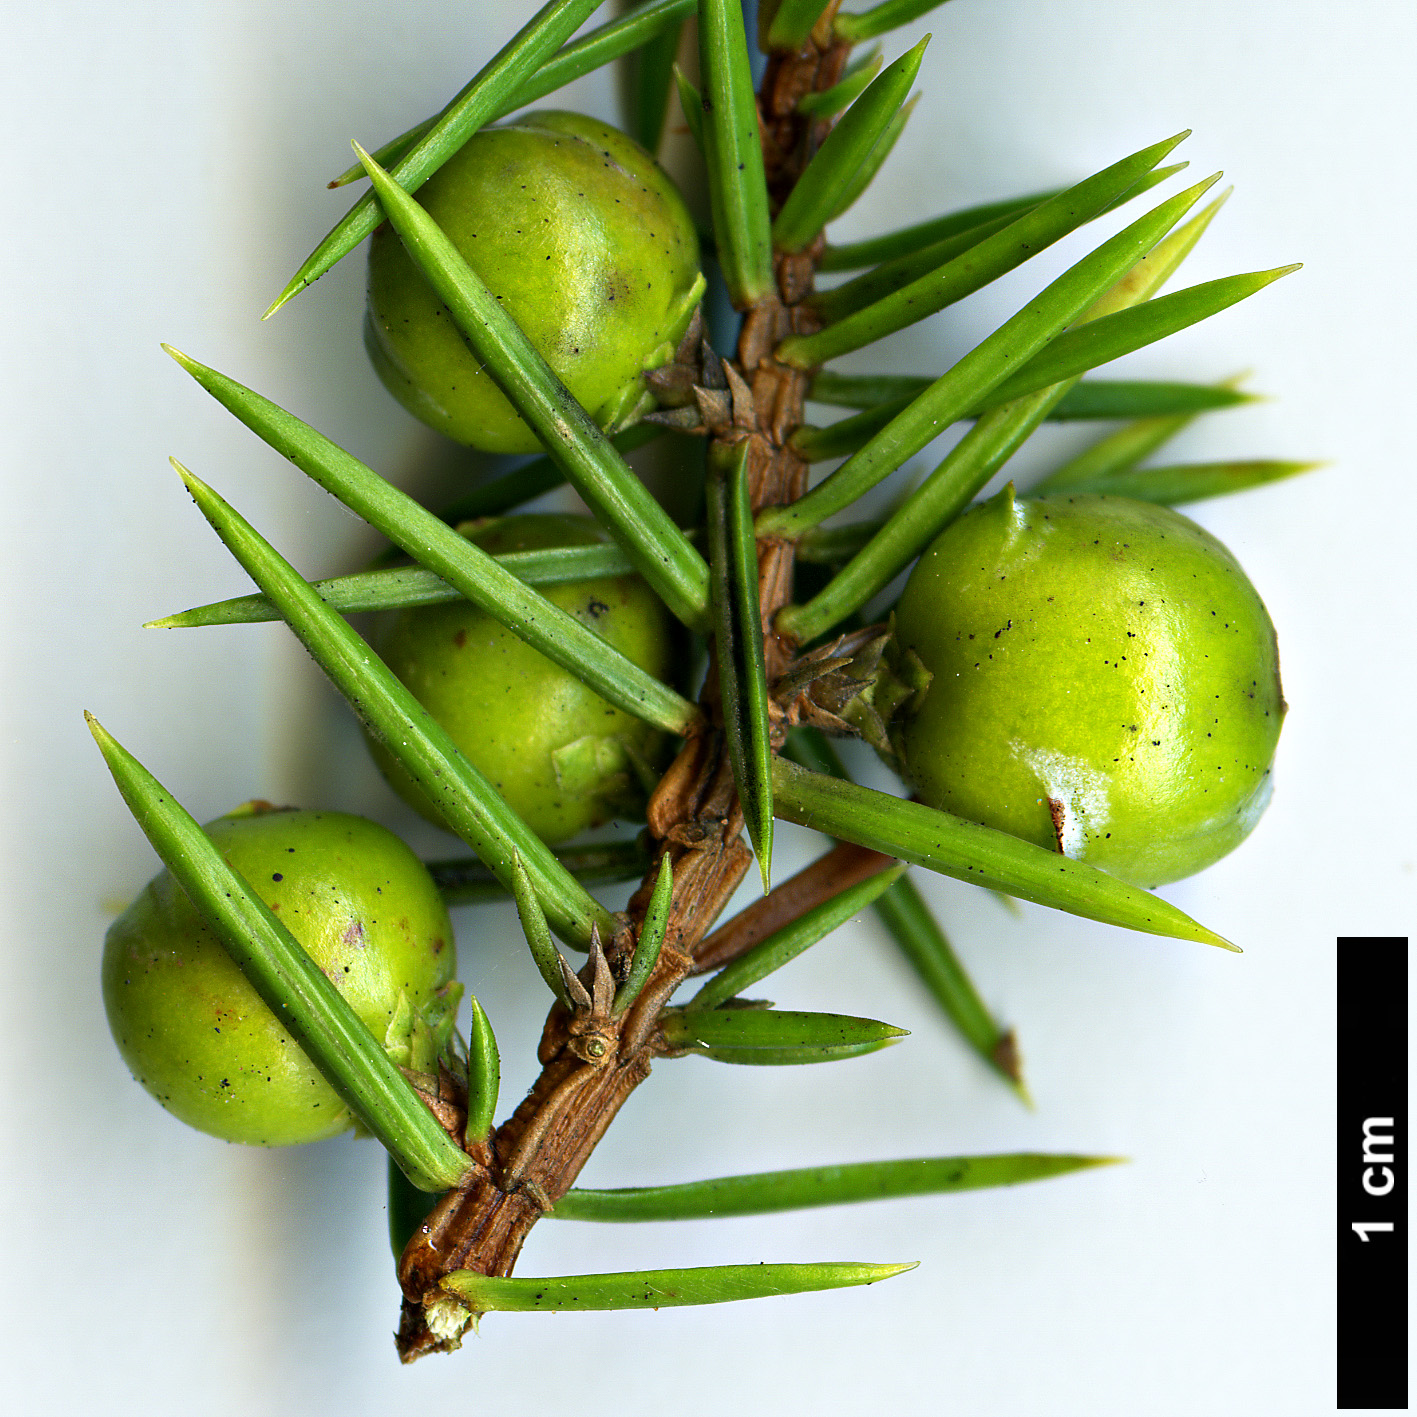 High resolution image: Family: Cupressaceae - Genus: Juniperus - Taxon: rigida